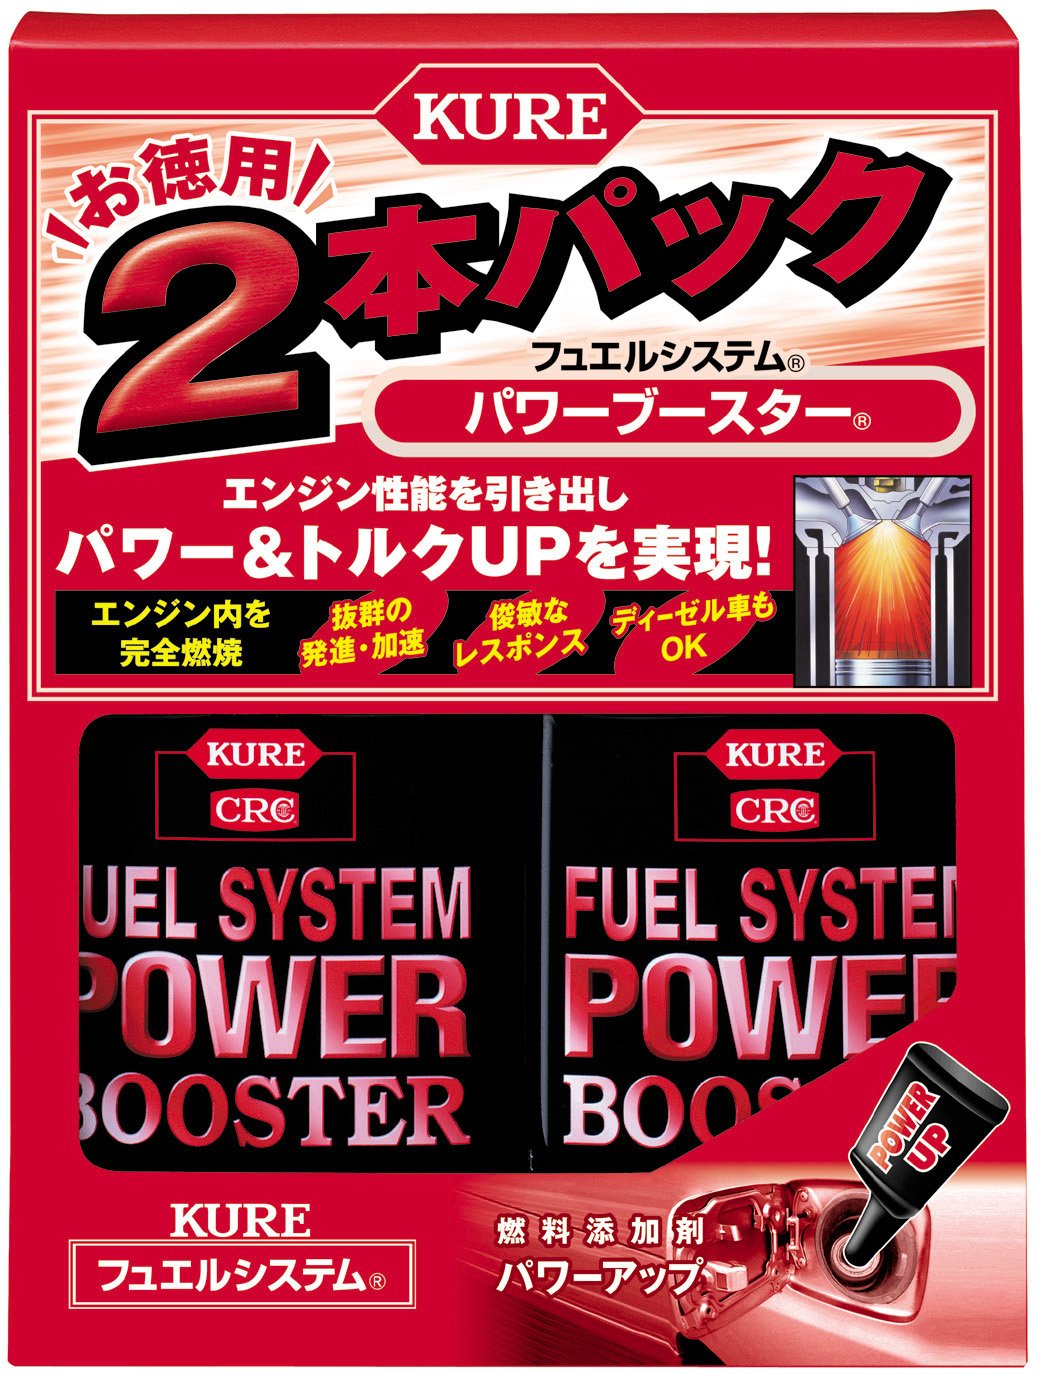 KURE(呉工業) フュエルシステム パワーブースター 2本パック (236ml×2)